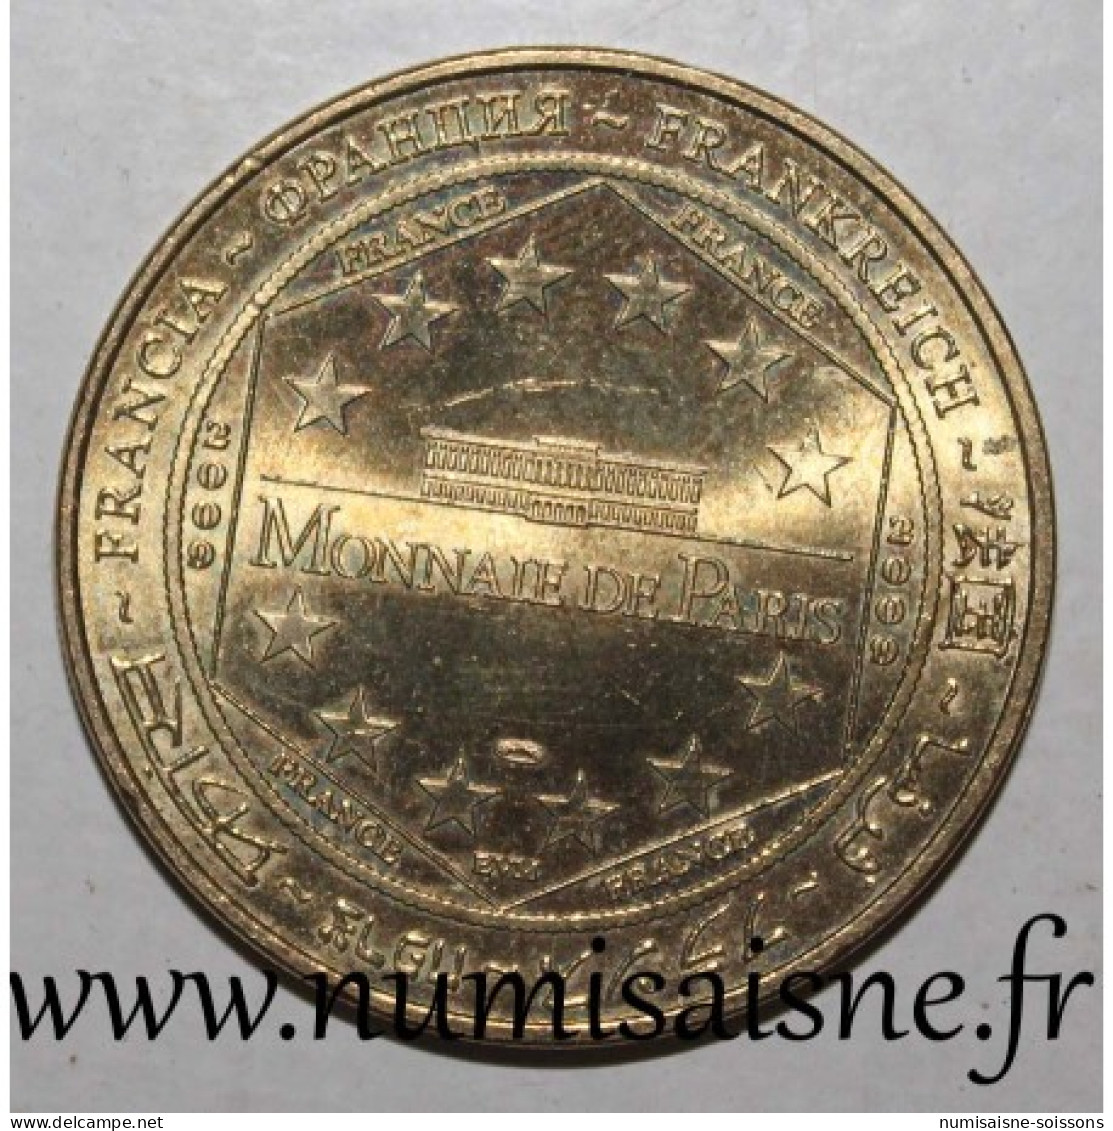 64 - SAINT JEAN DE LUZ - PAYS BASQUE - Monnaie De Paris - 2009 - 2009